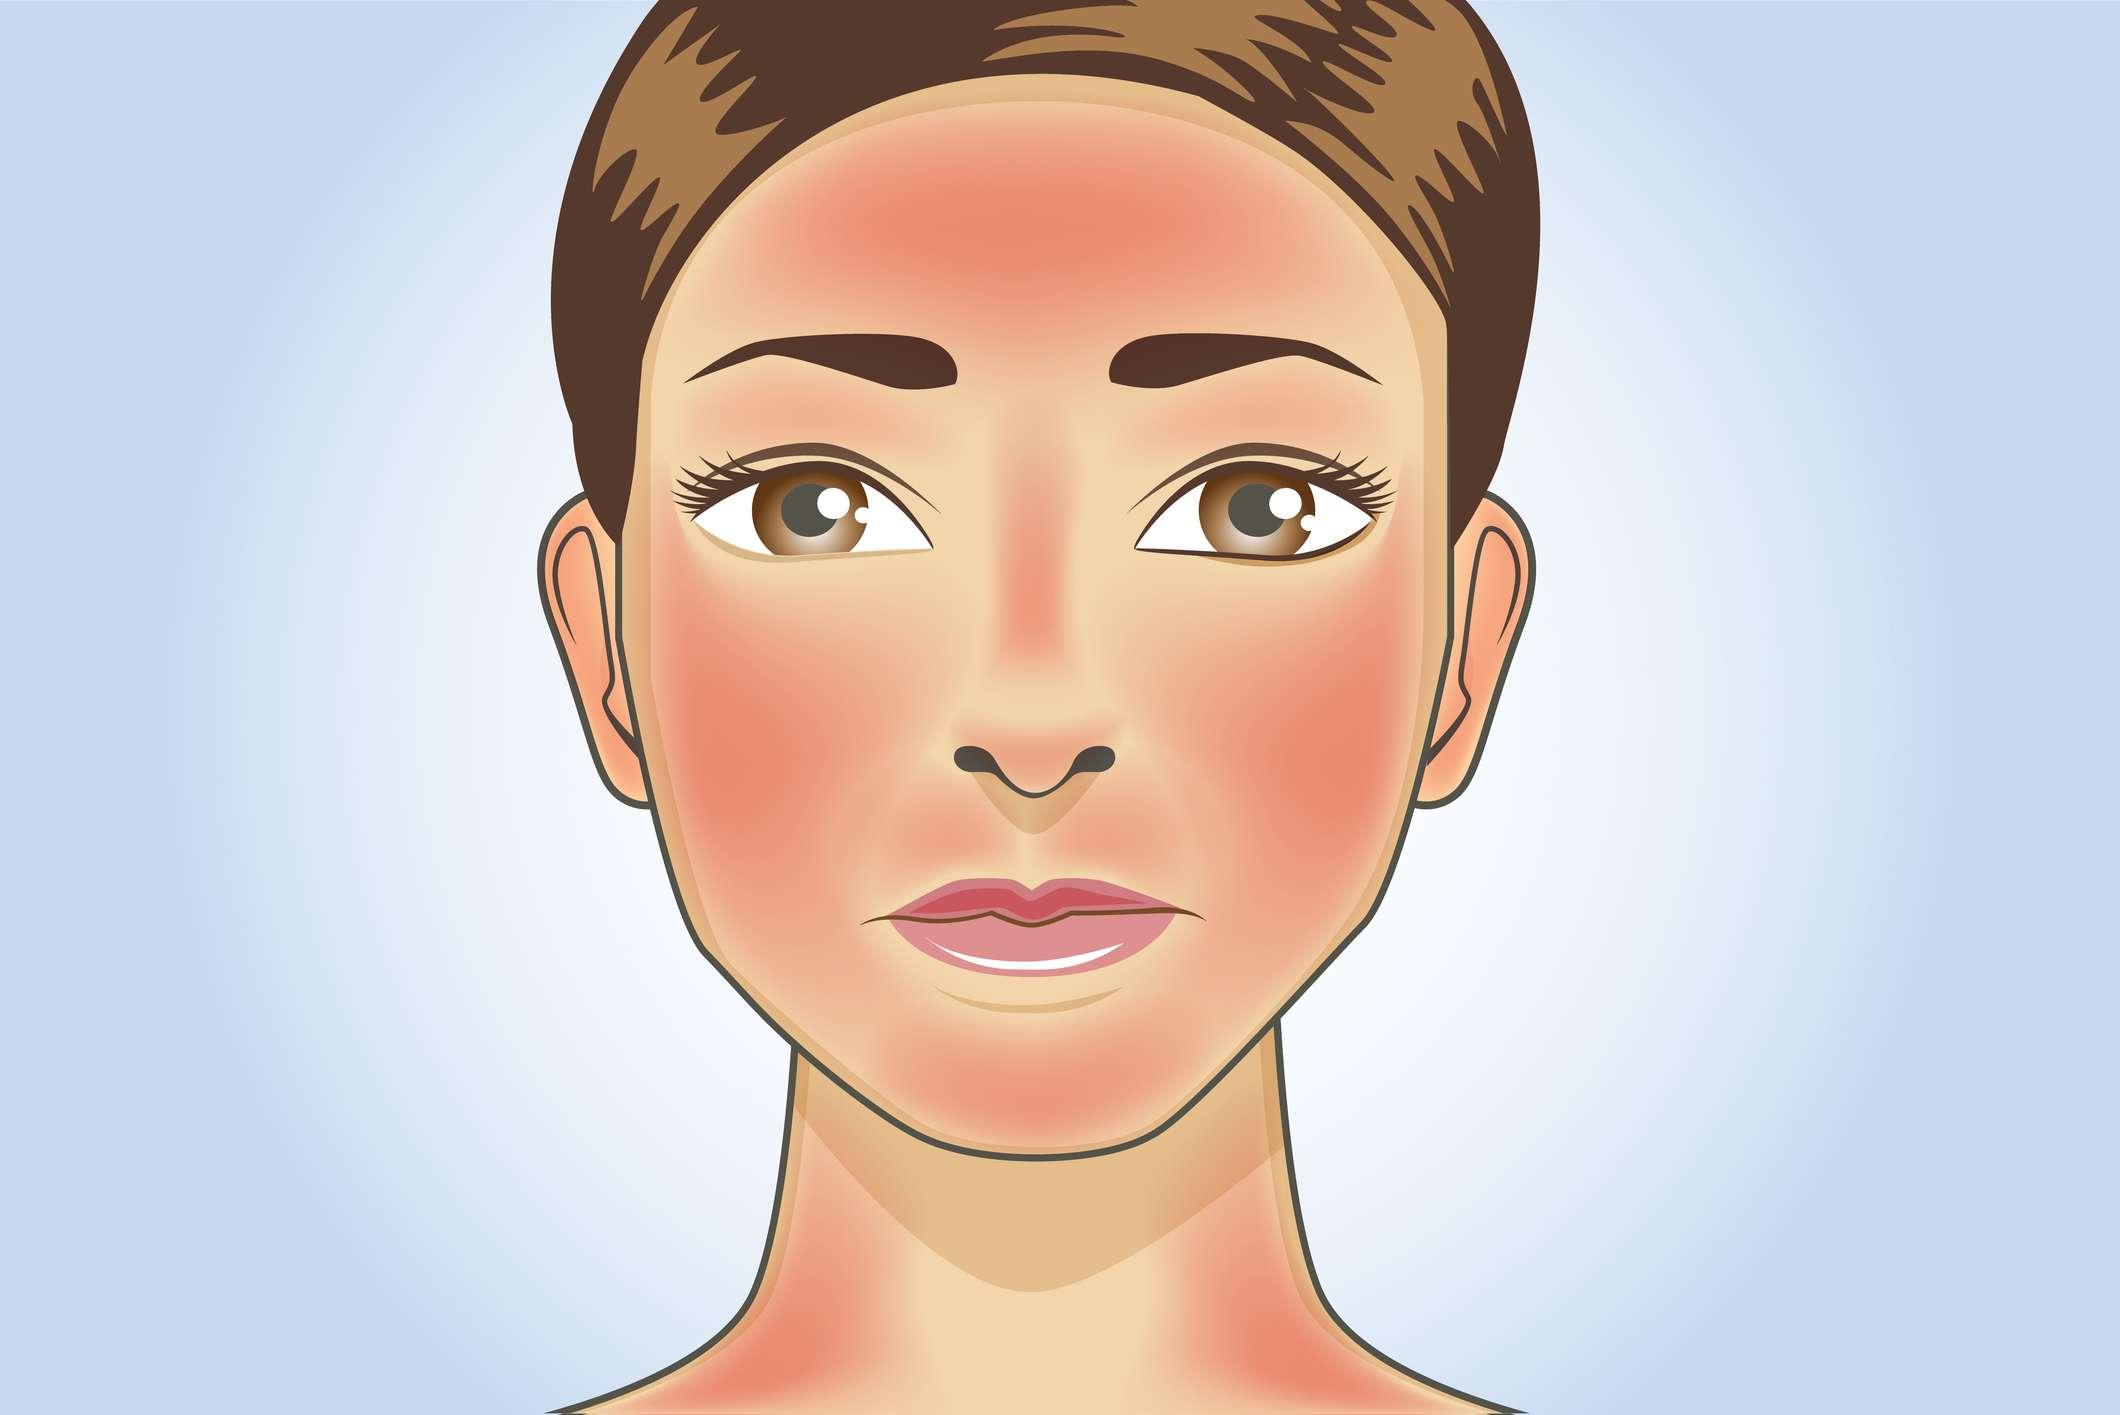 Hautrötungen erscheinen auf Gesicht und Hals der Frau durch Sonnenbrand. Illustration über die Gefahr von ultravioletter Strahlung.